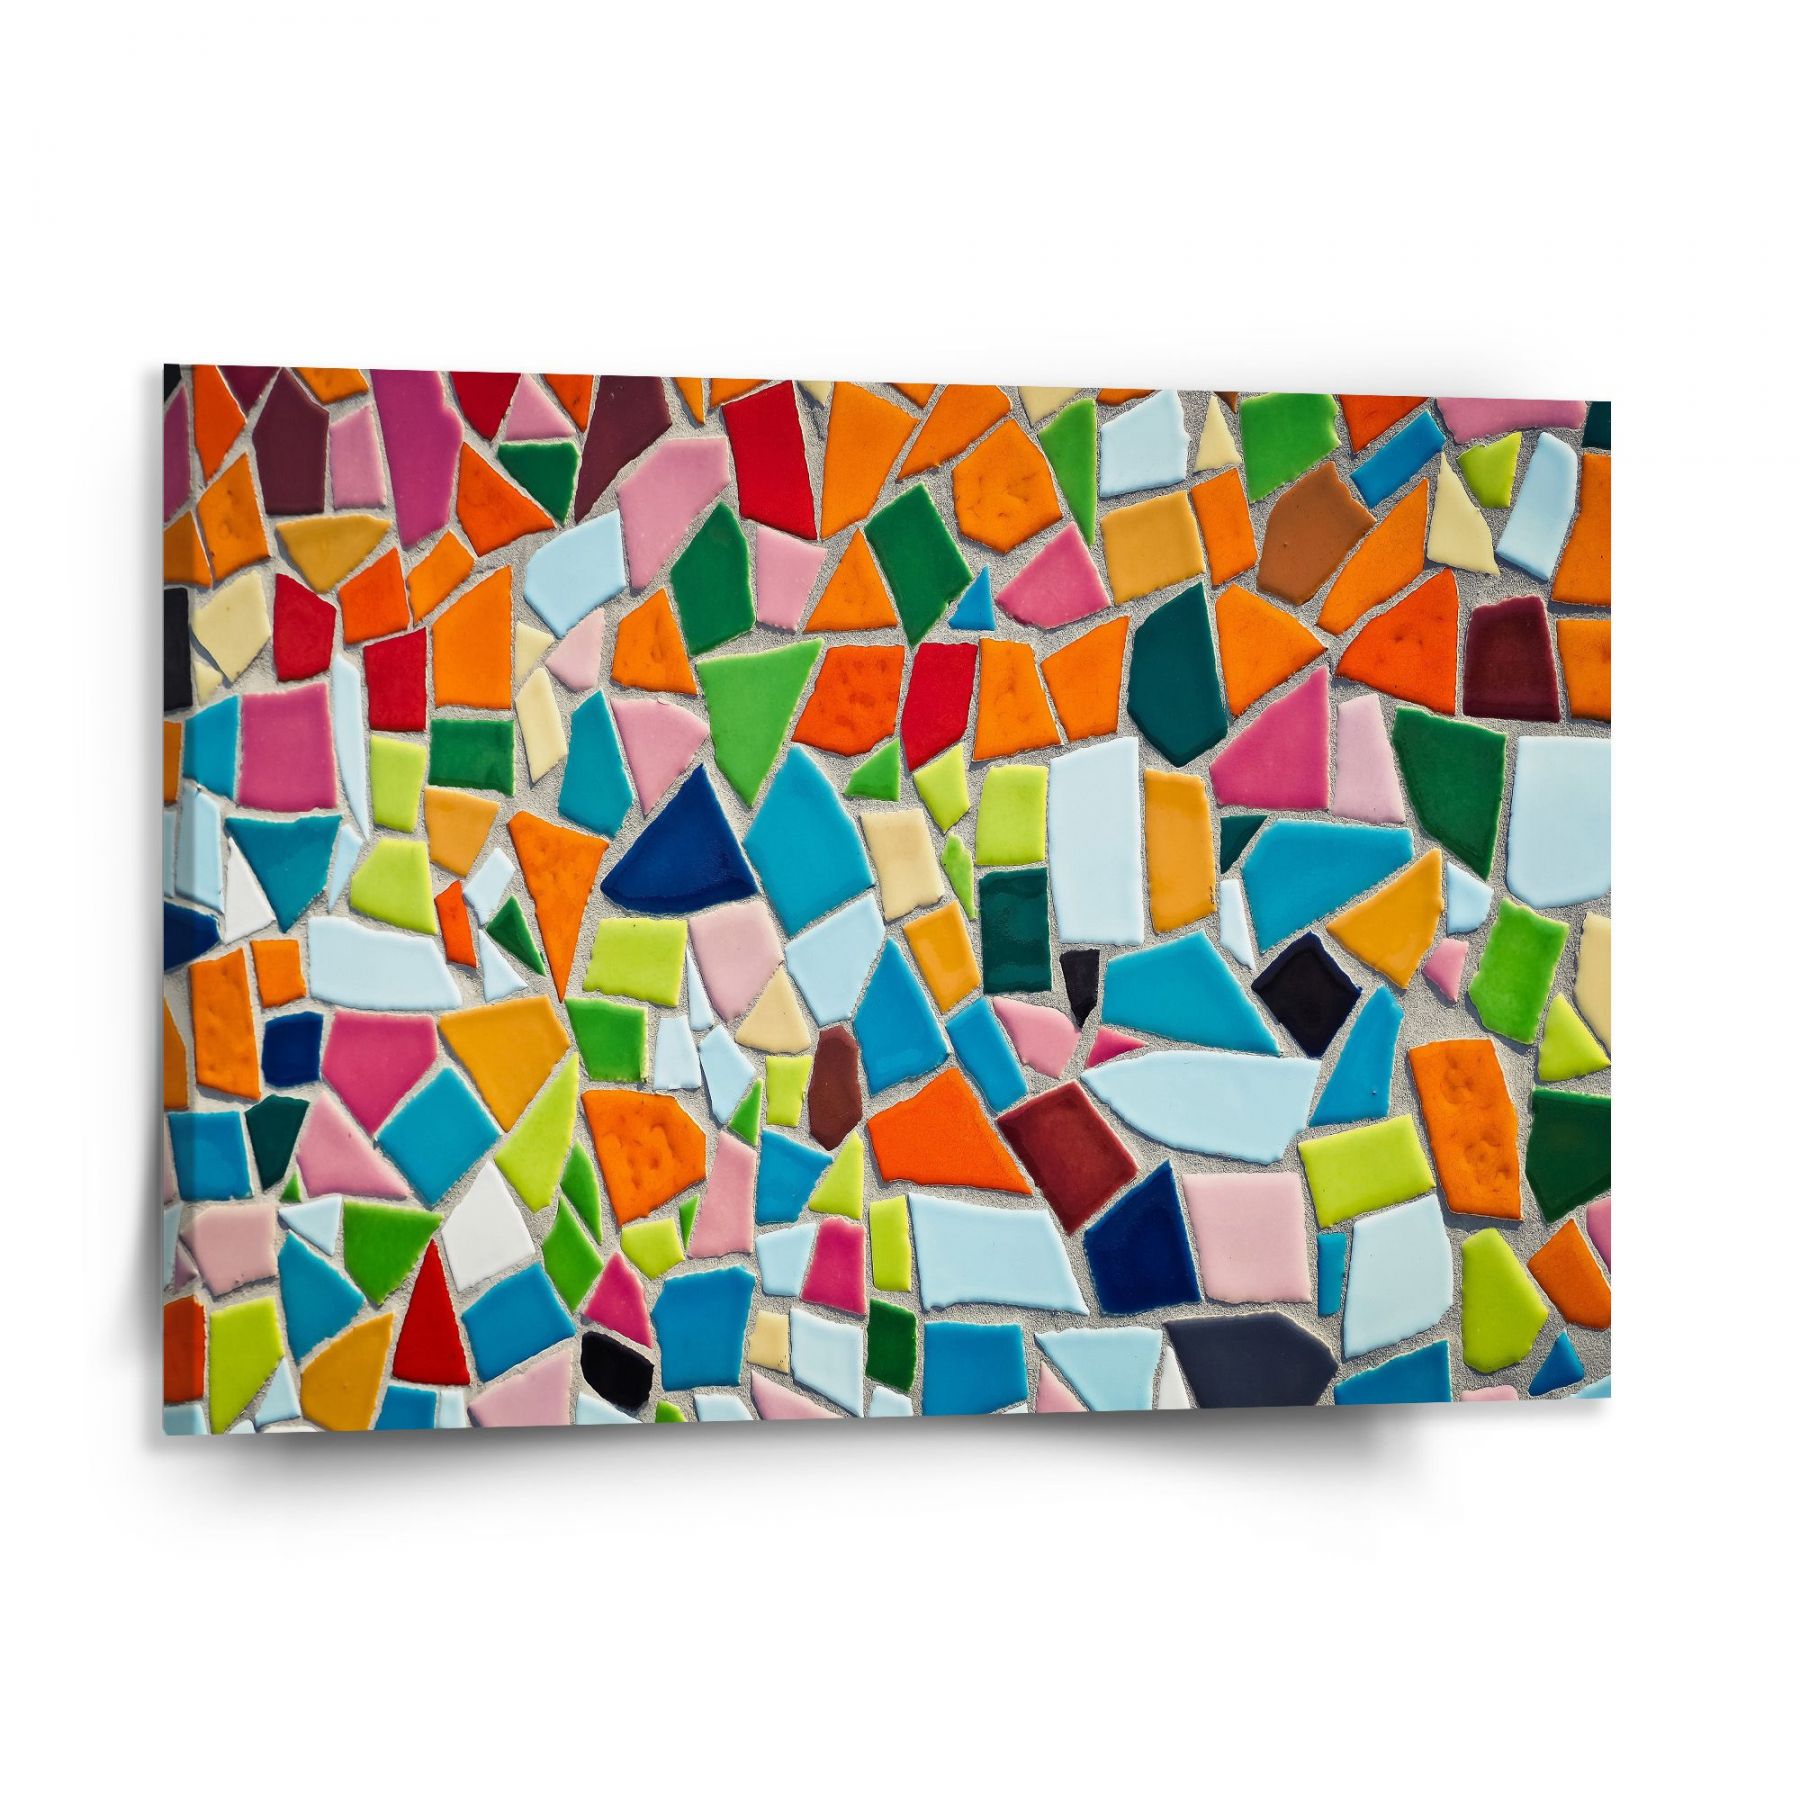 Obraz SABLIO - Barevná mozaika 150x110 cm - E-shop Sablo s.r.o.